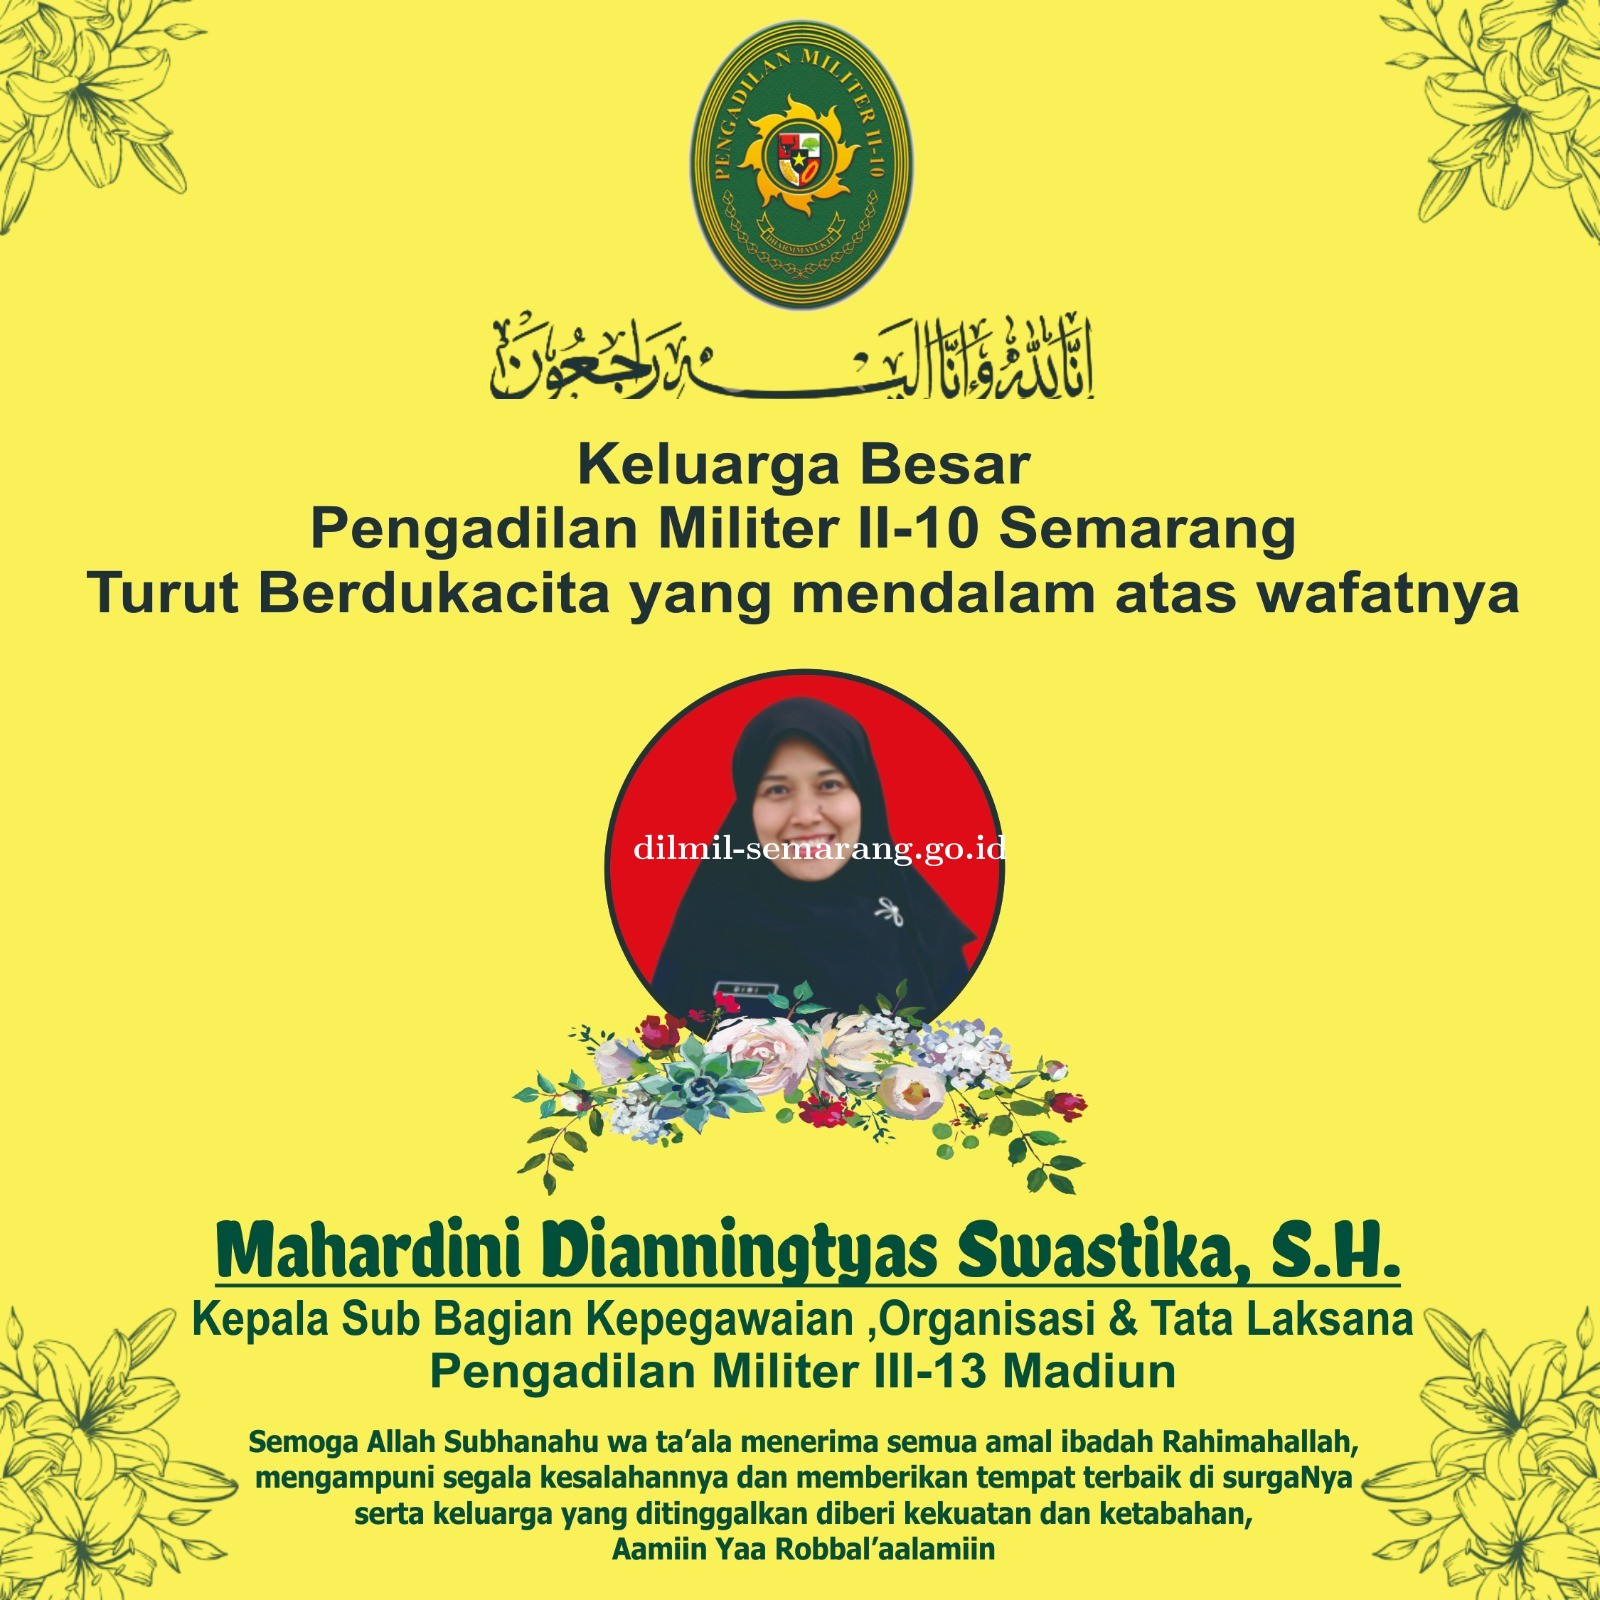 Keluarga Besar Pengadilan Militer II-10 Semarang turut berdukacita atas wafatnya ASN Mahardini Dianningtyas Swastika, S.H